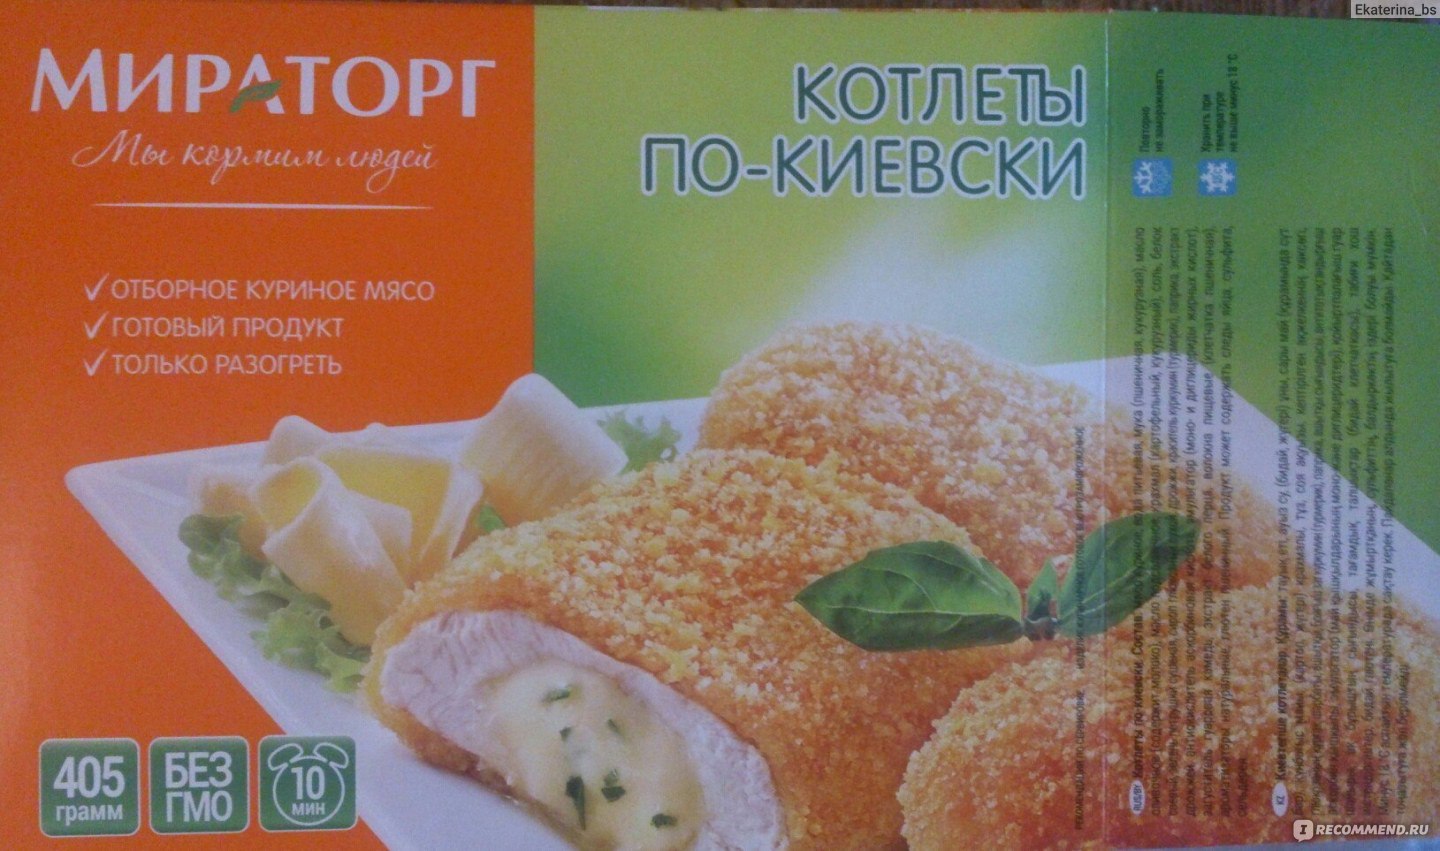 Котлета по киевски калории